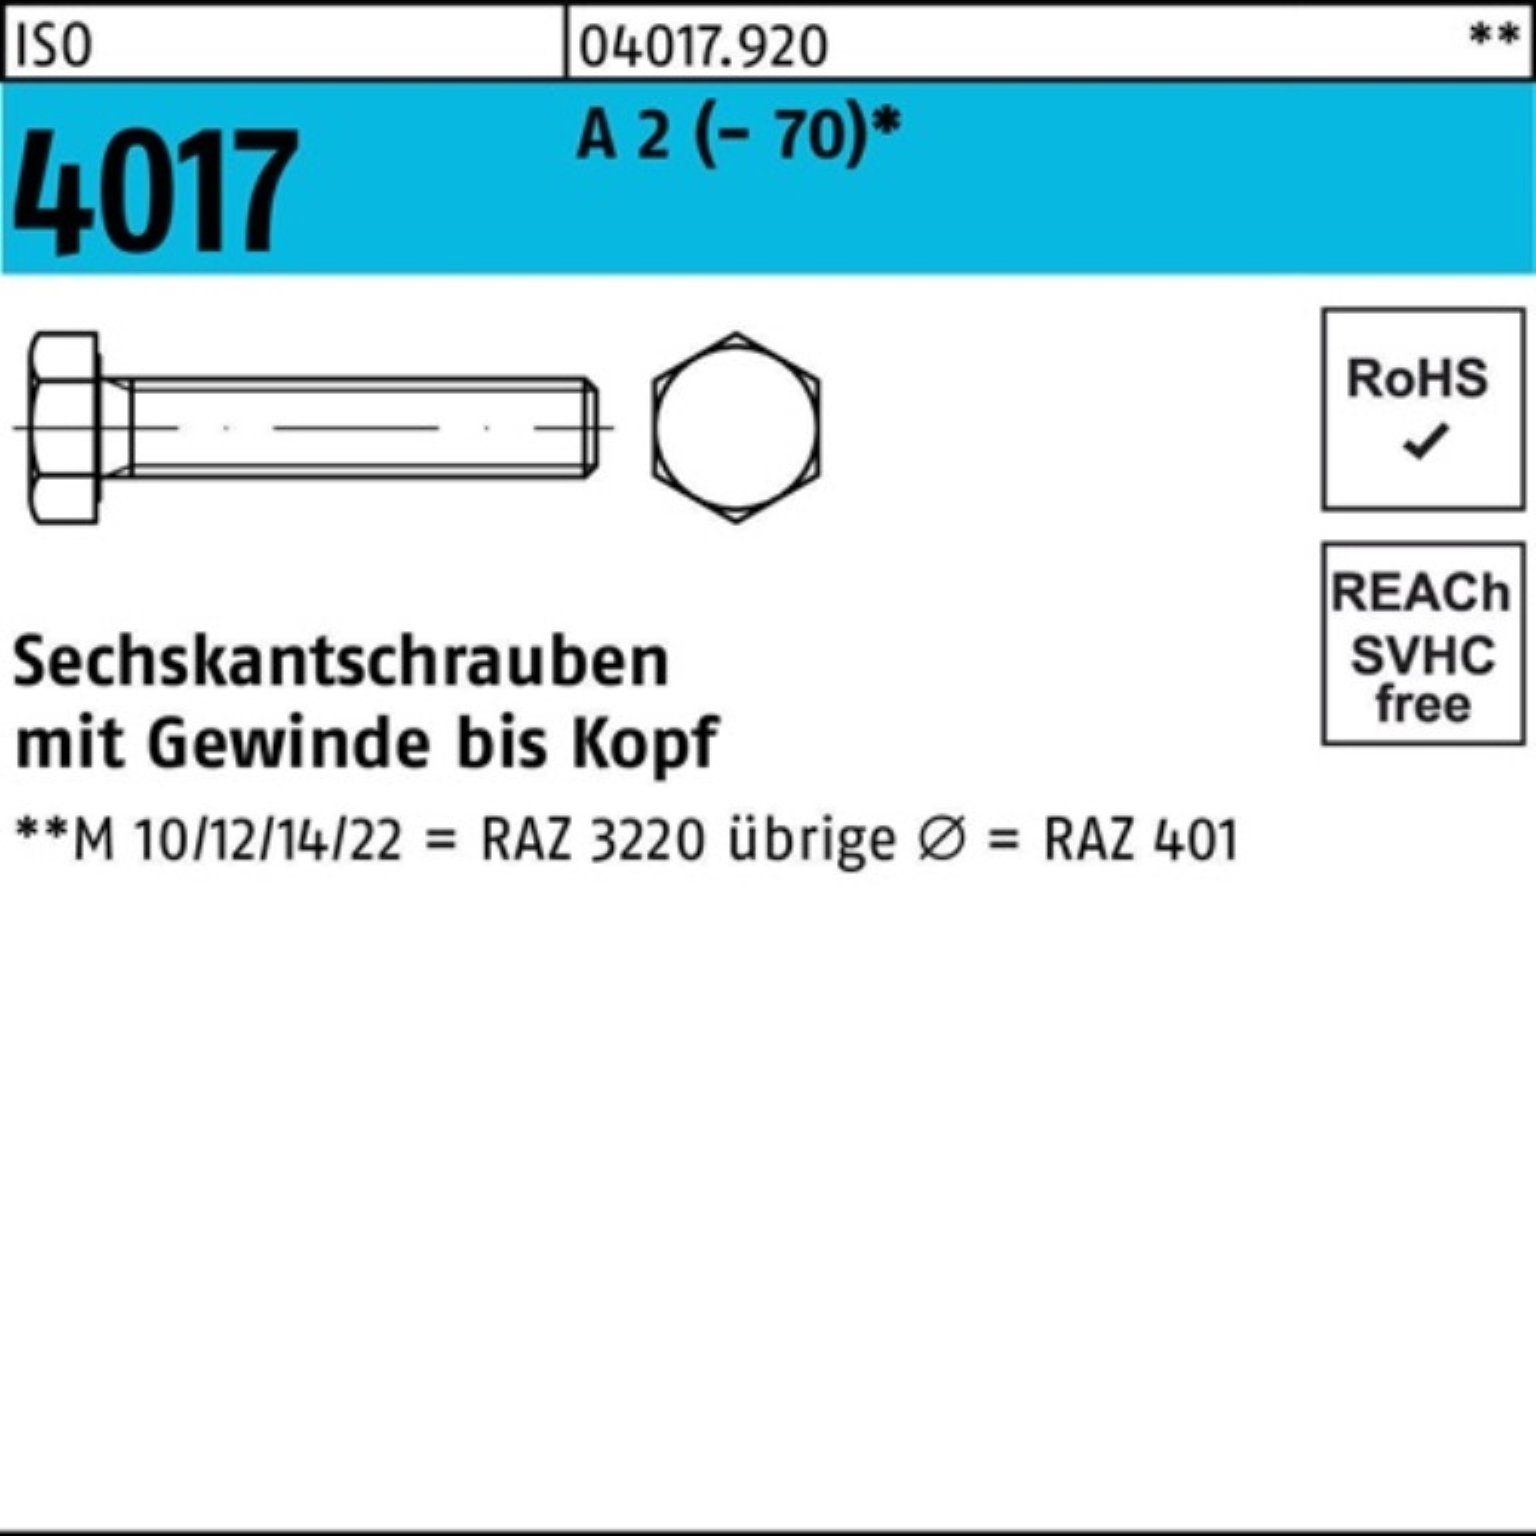 Bufab Sechskantschraube 100er Pack Sechskantschraube ISO 4017 VG M10x 200 A 2 (70) 1 Stück